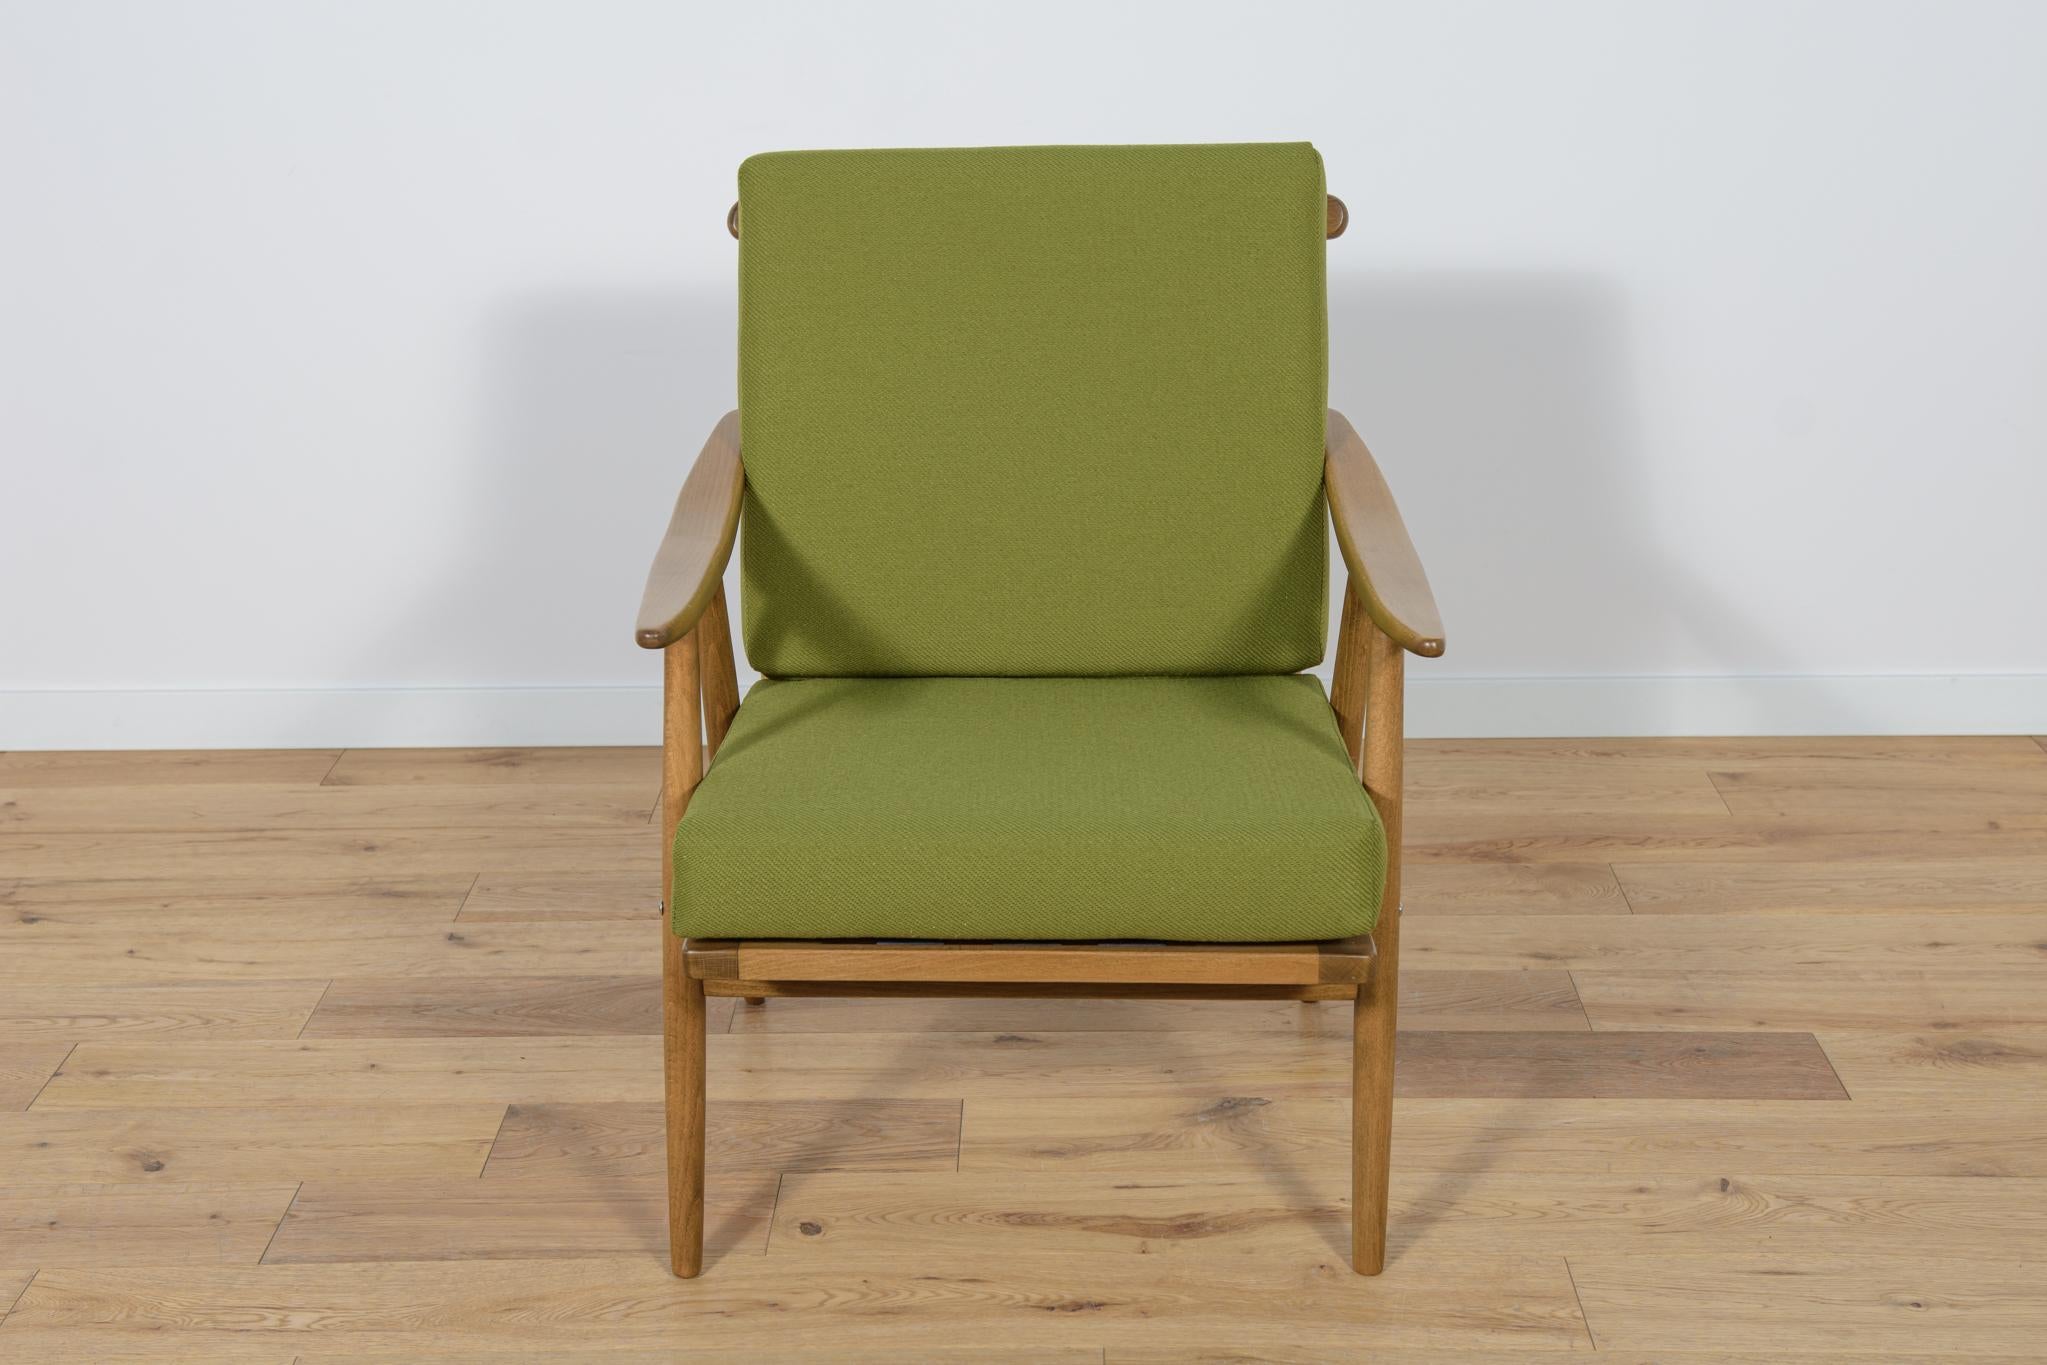 Dieser Sessel wurde in den 1960er Jahren von der tschechoslowakischen Firma TON hergestellt. Die Buchenelemente wurden von der alten Oberfläche gereinigt und mit einer Nussbaumbeize gestrichen und mit einem starken seidenmatten Lack versehen. Die